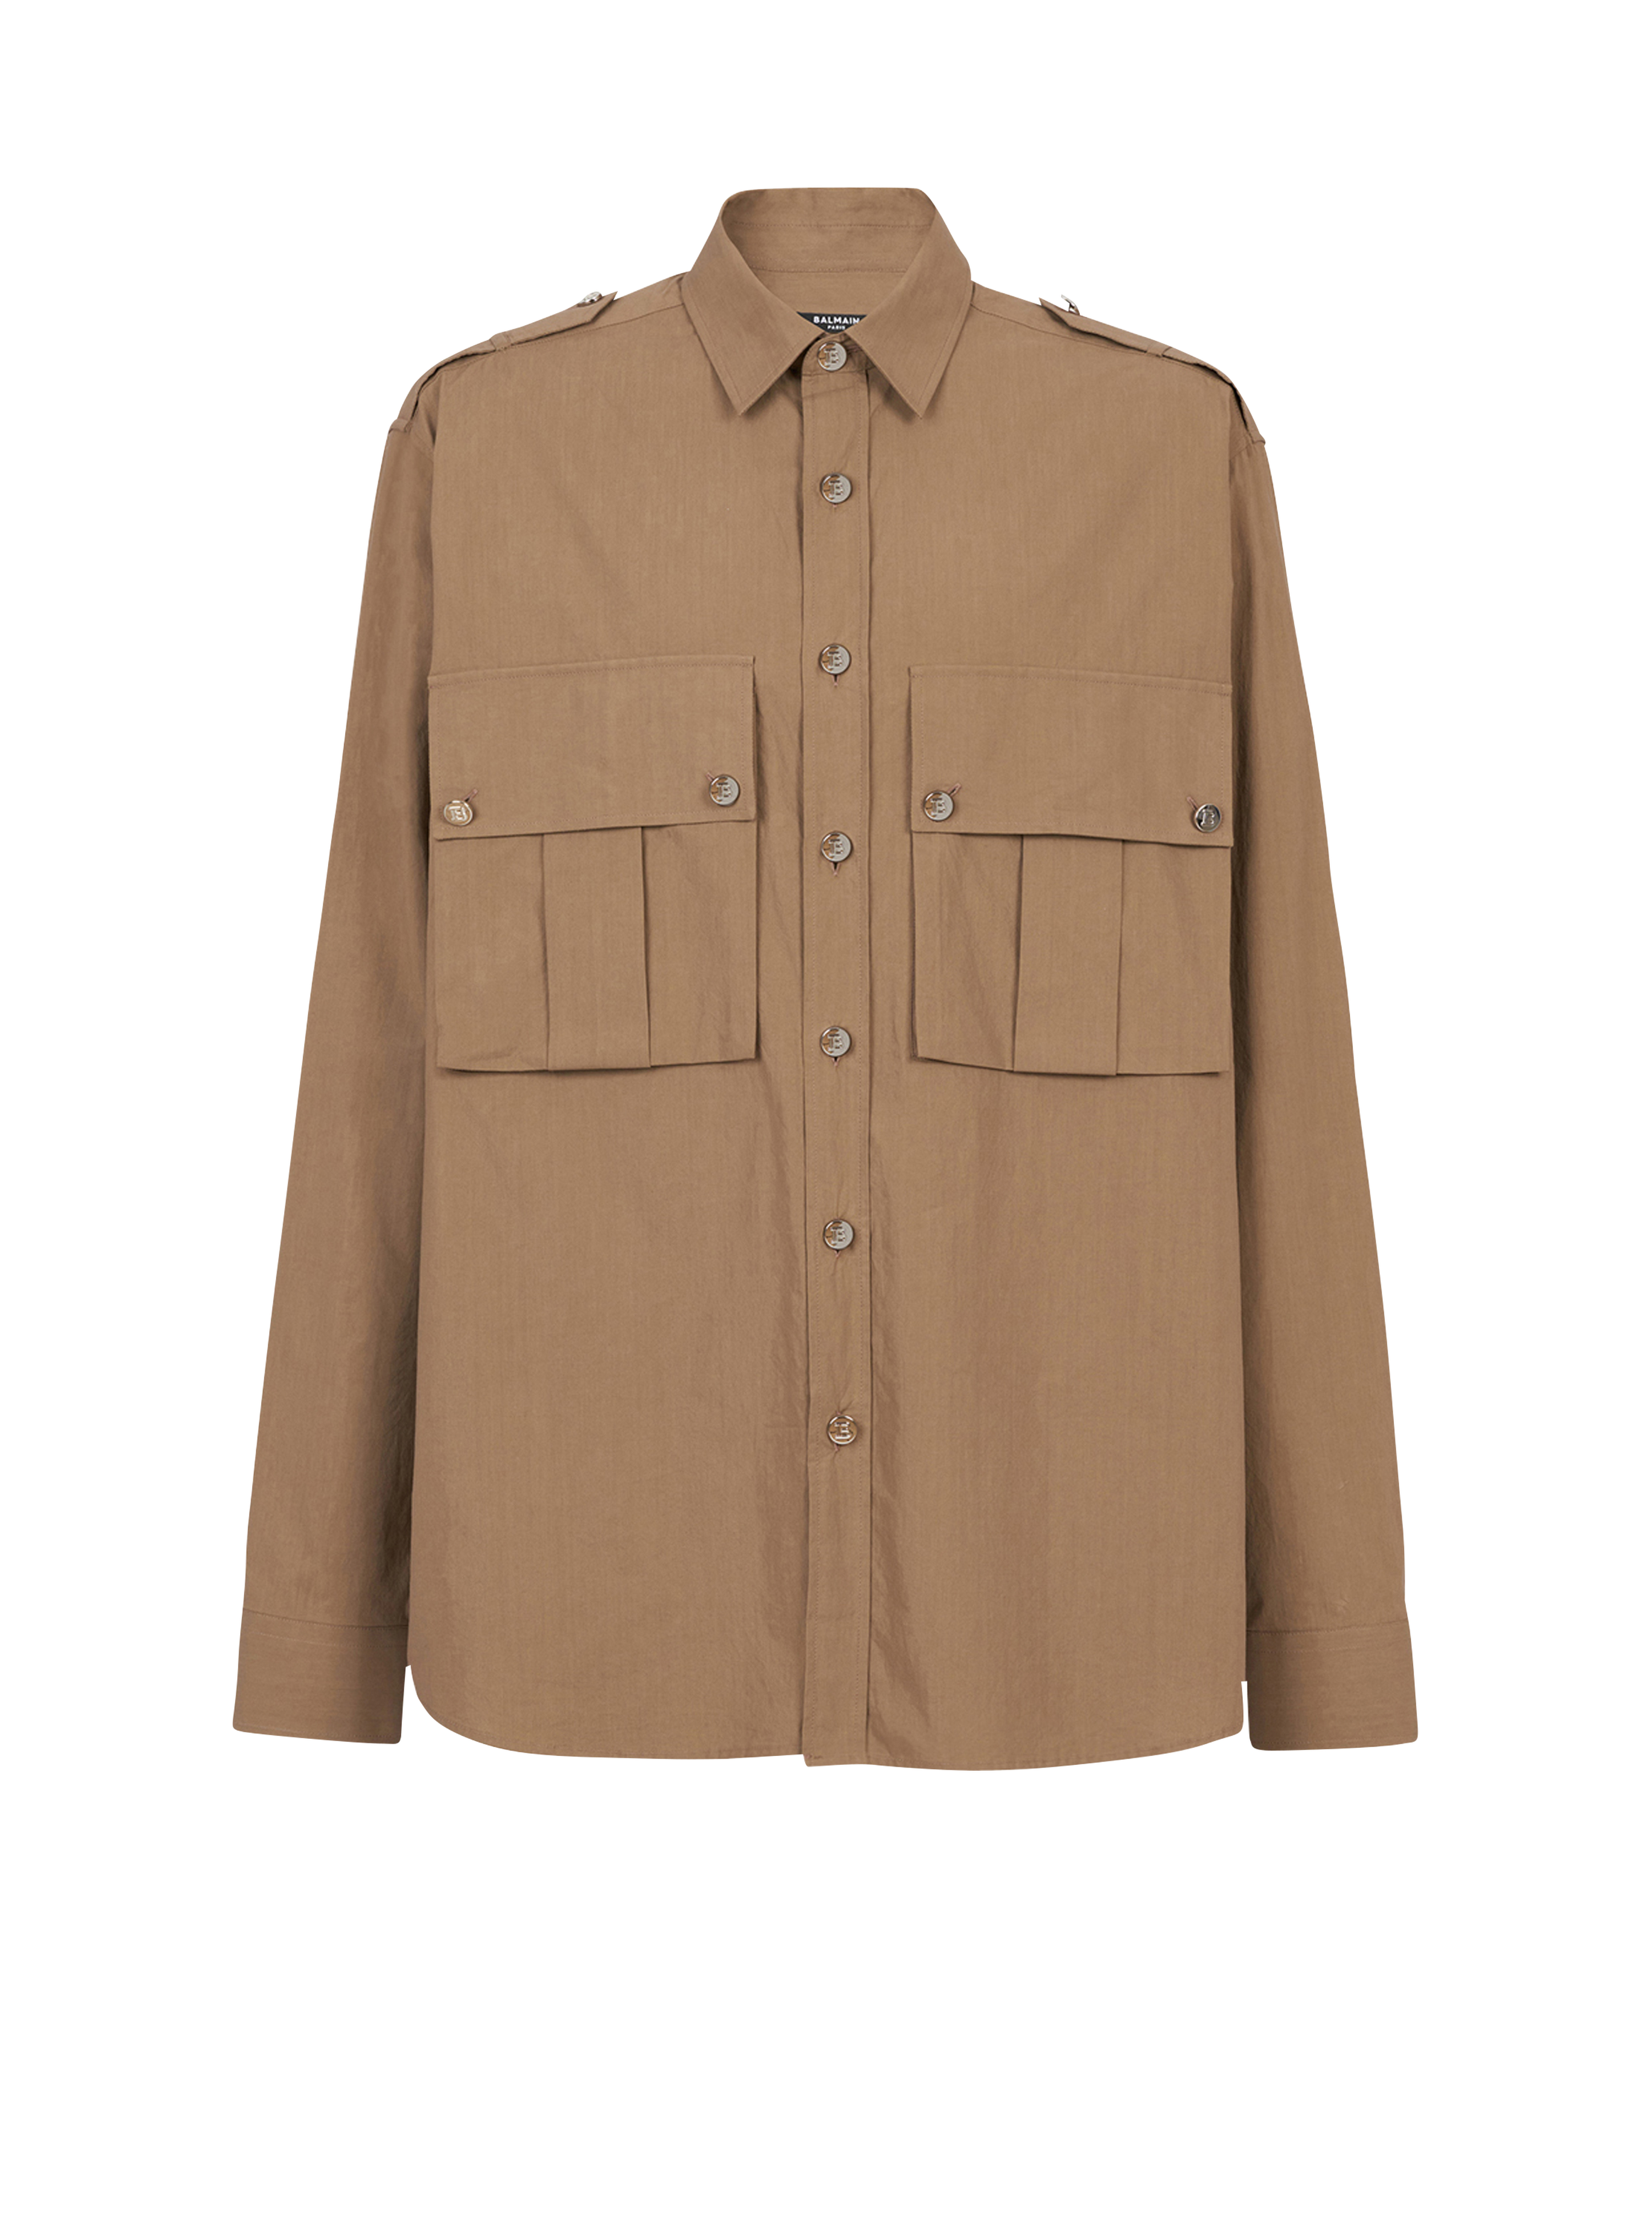 Cotton shirt with Balmain badge, brown